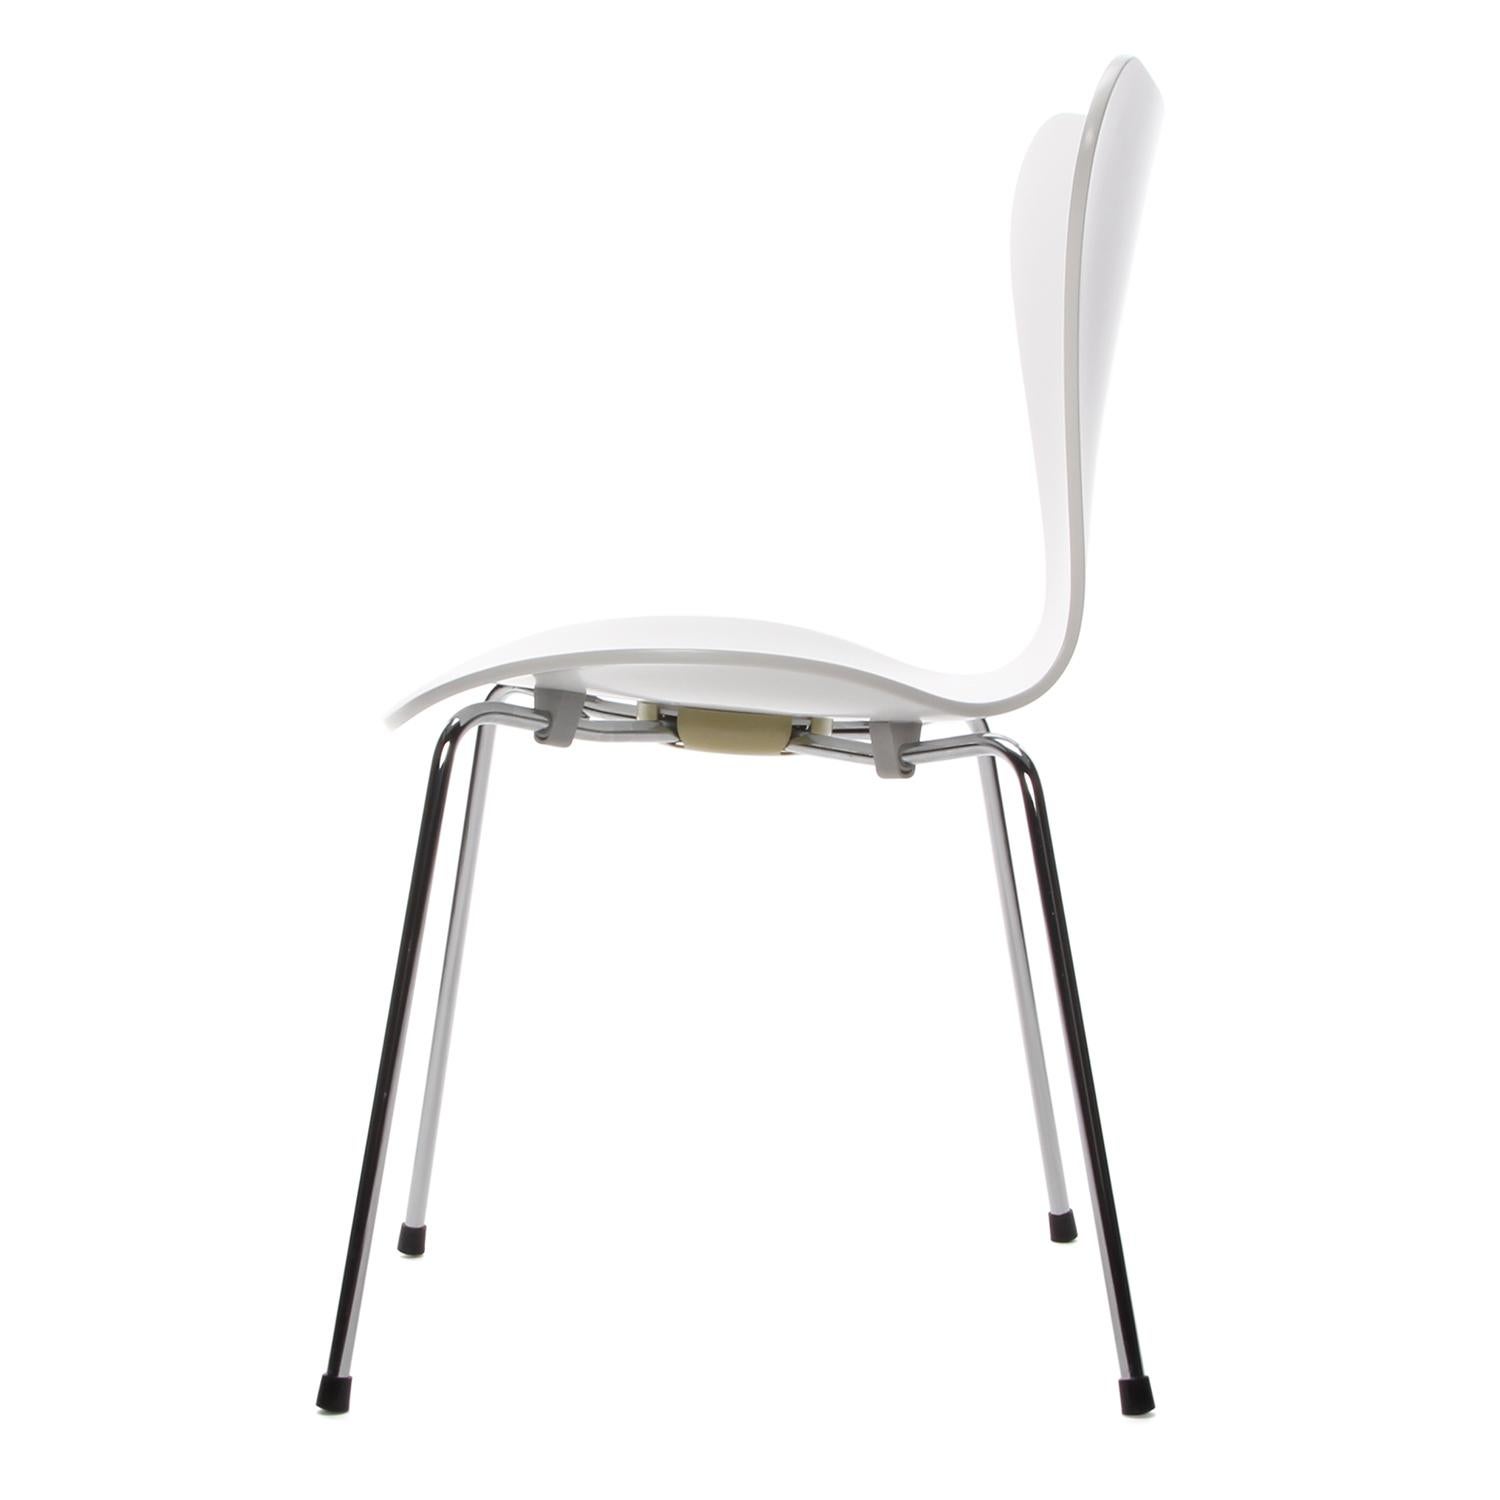 Danish Series 7 White Chair by Arne Jacobsen for Fritz Hansen in 1955